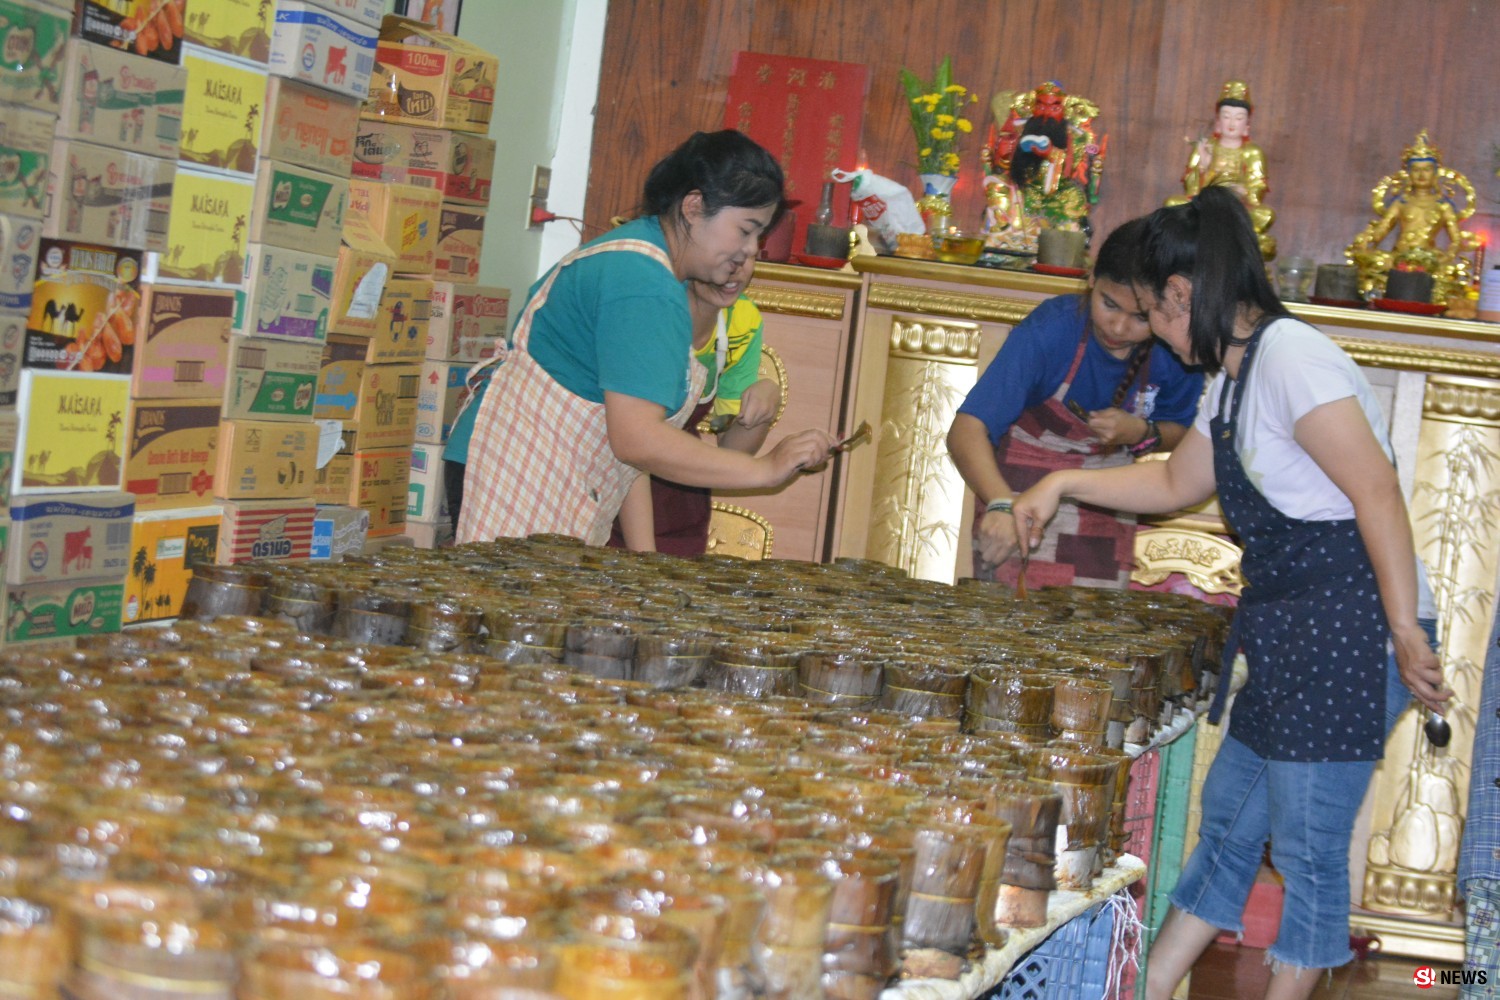 Fwd: ร้านขนมเข่งในเบตงเร่งผลิต ขนมเข่ง ขายดีรับจากไทยและมาเลย์